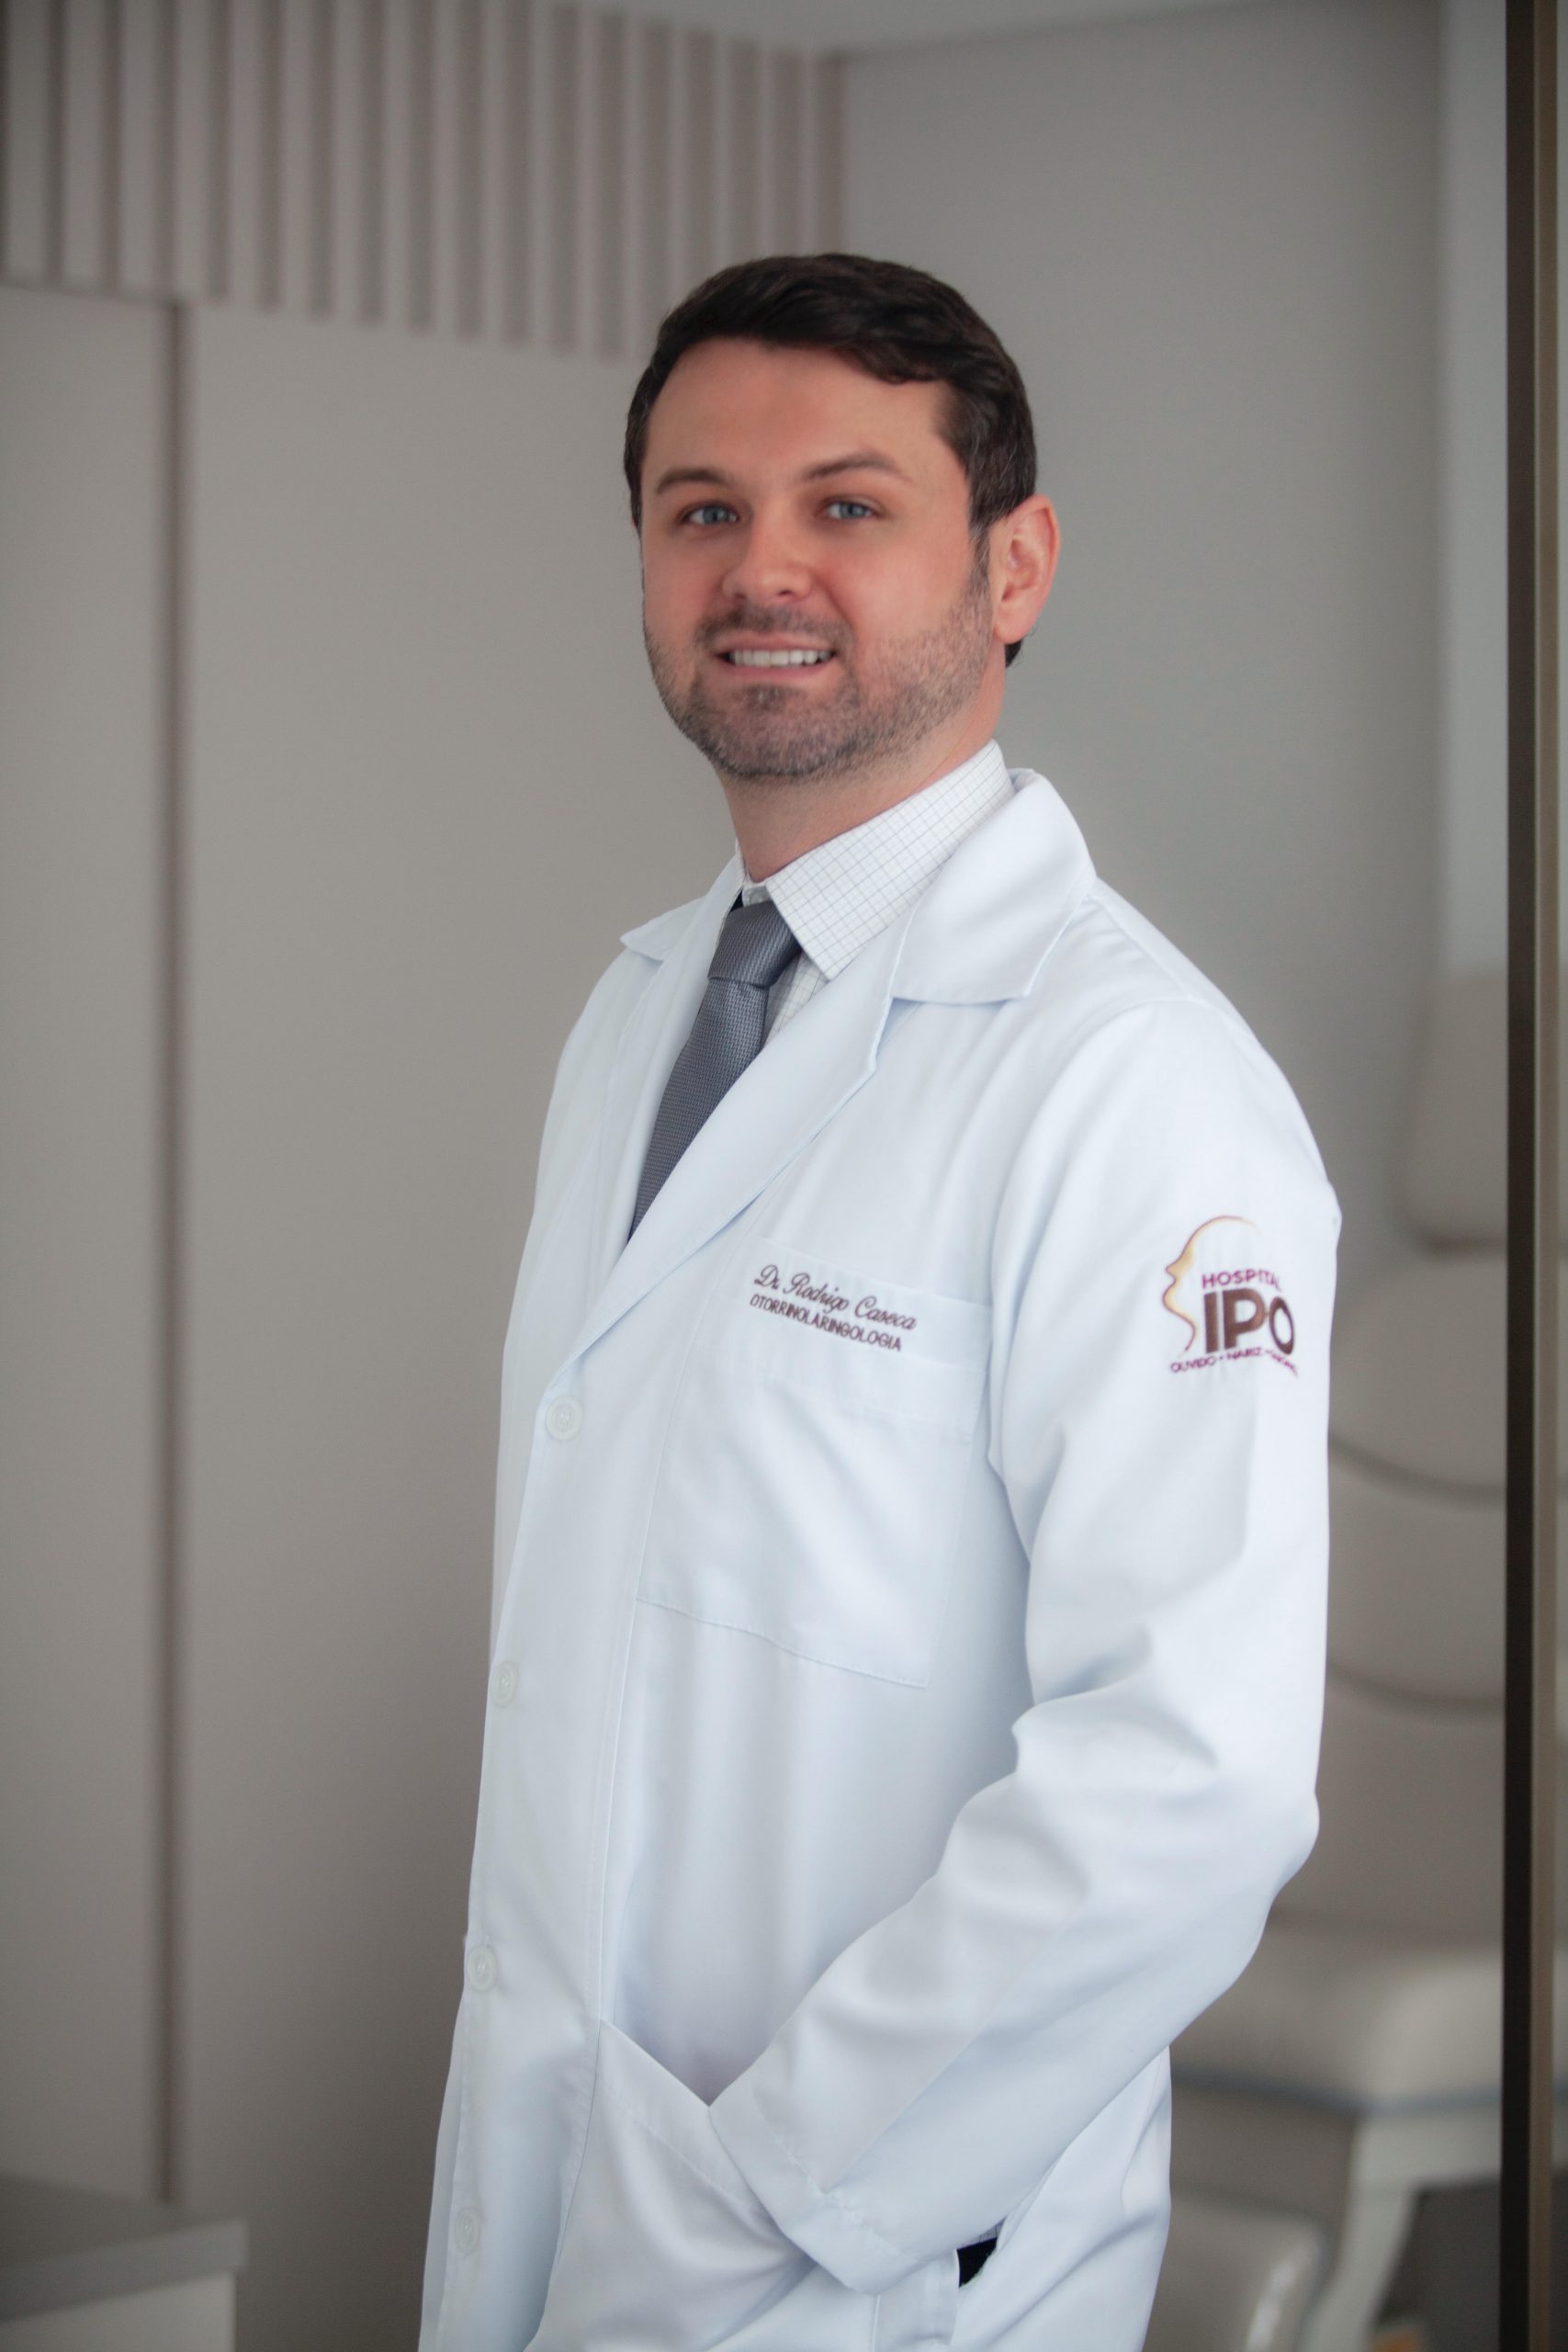 Dicas de Sáude com “Dr. Rodrigo Caseca”: Doutor, tenho rinite, sinusite ou todas as “ites”?